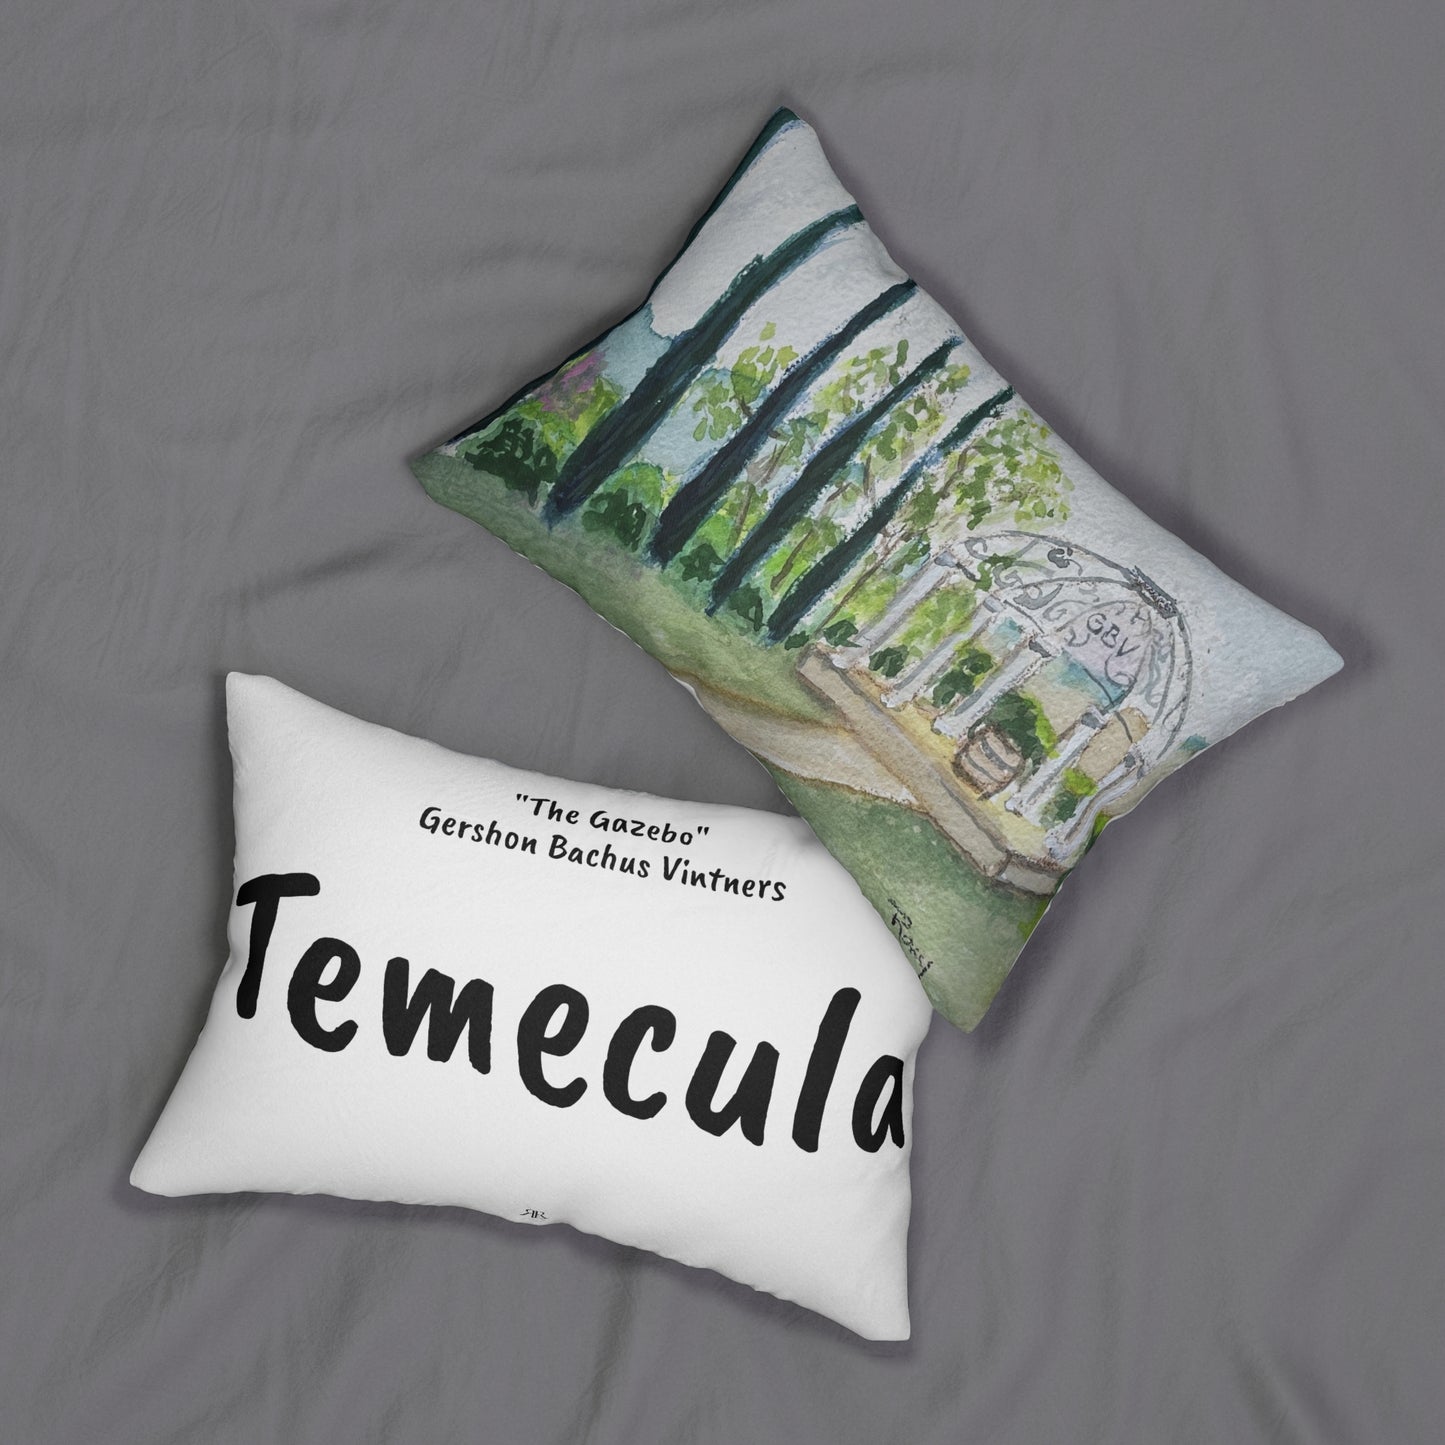 Oreiller lombaire Temecula avec « The Gazebo » sur la peinture de Gershon Bachus Vintners et « Temecula »